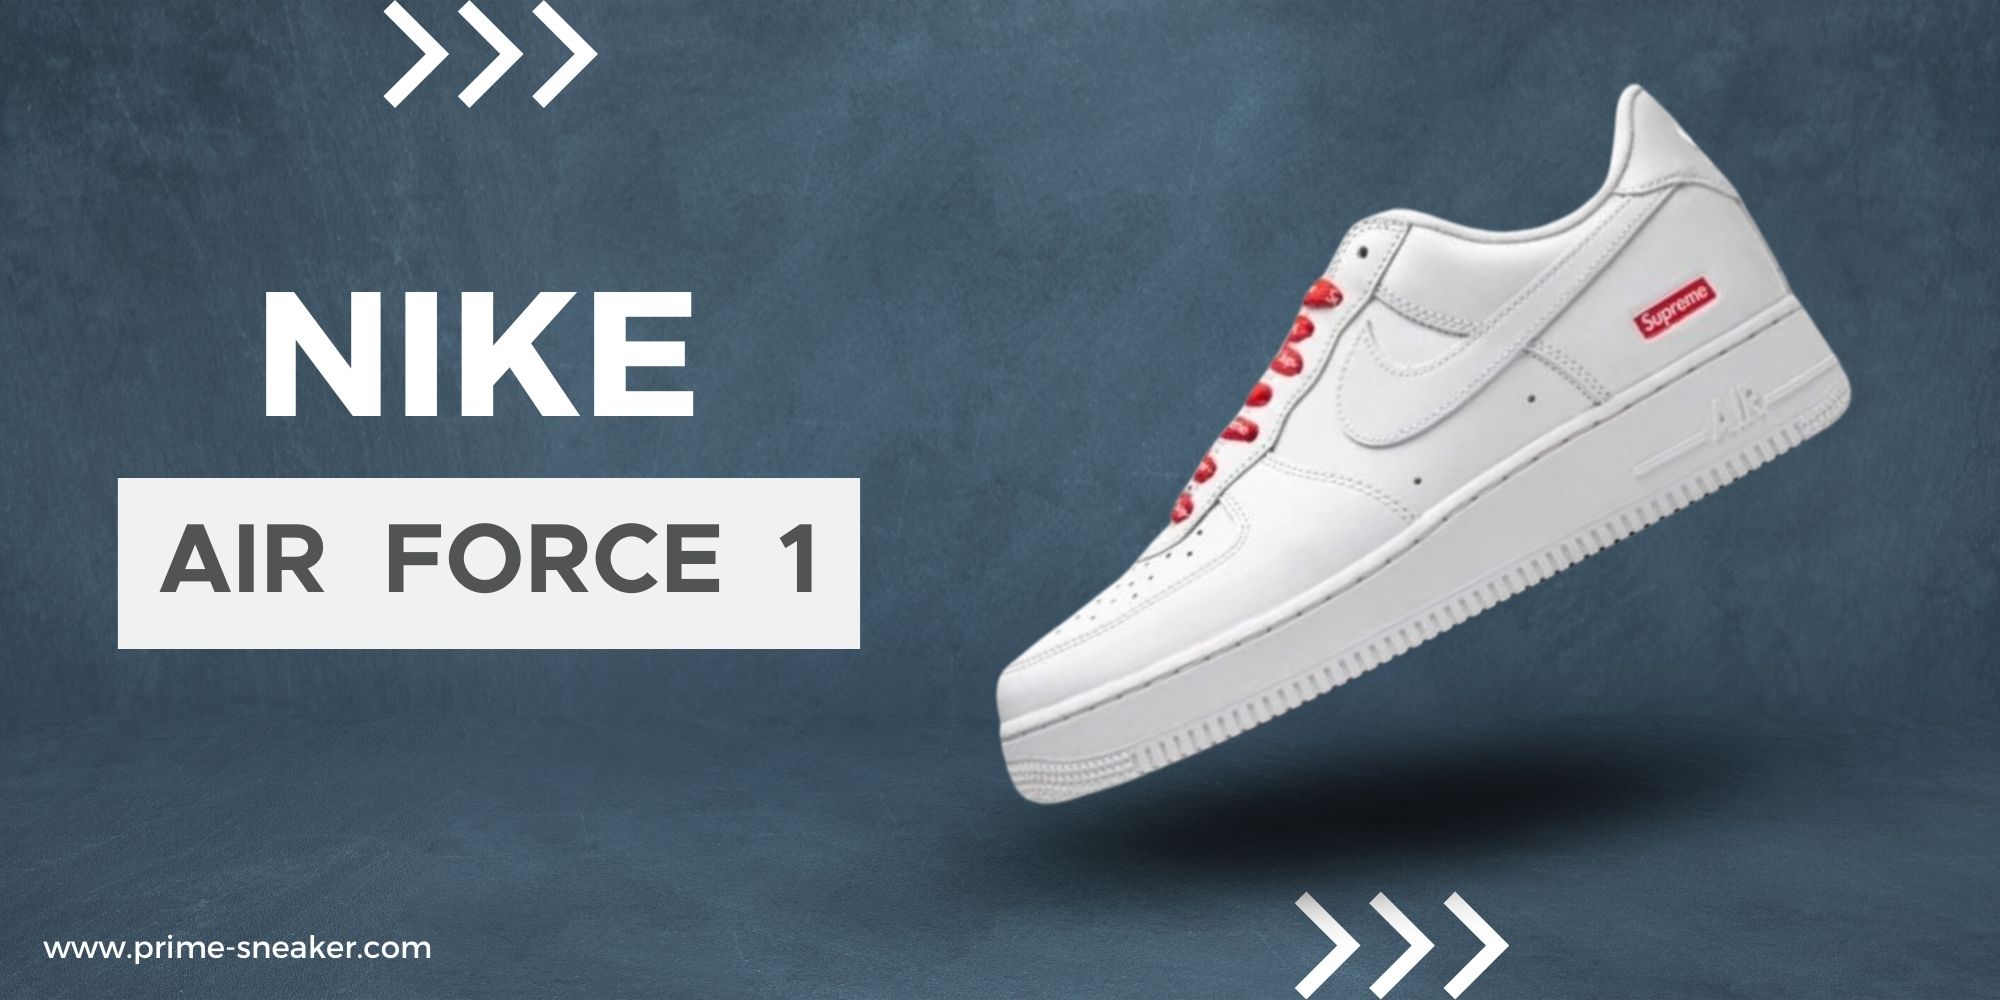 artikel Decimale Samenwerken met Collection Nike Air Force 1 – Prime Sneaker